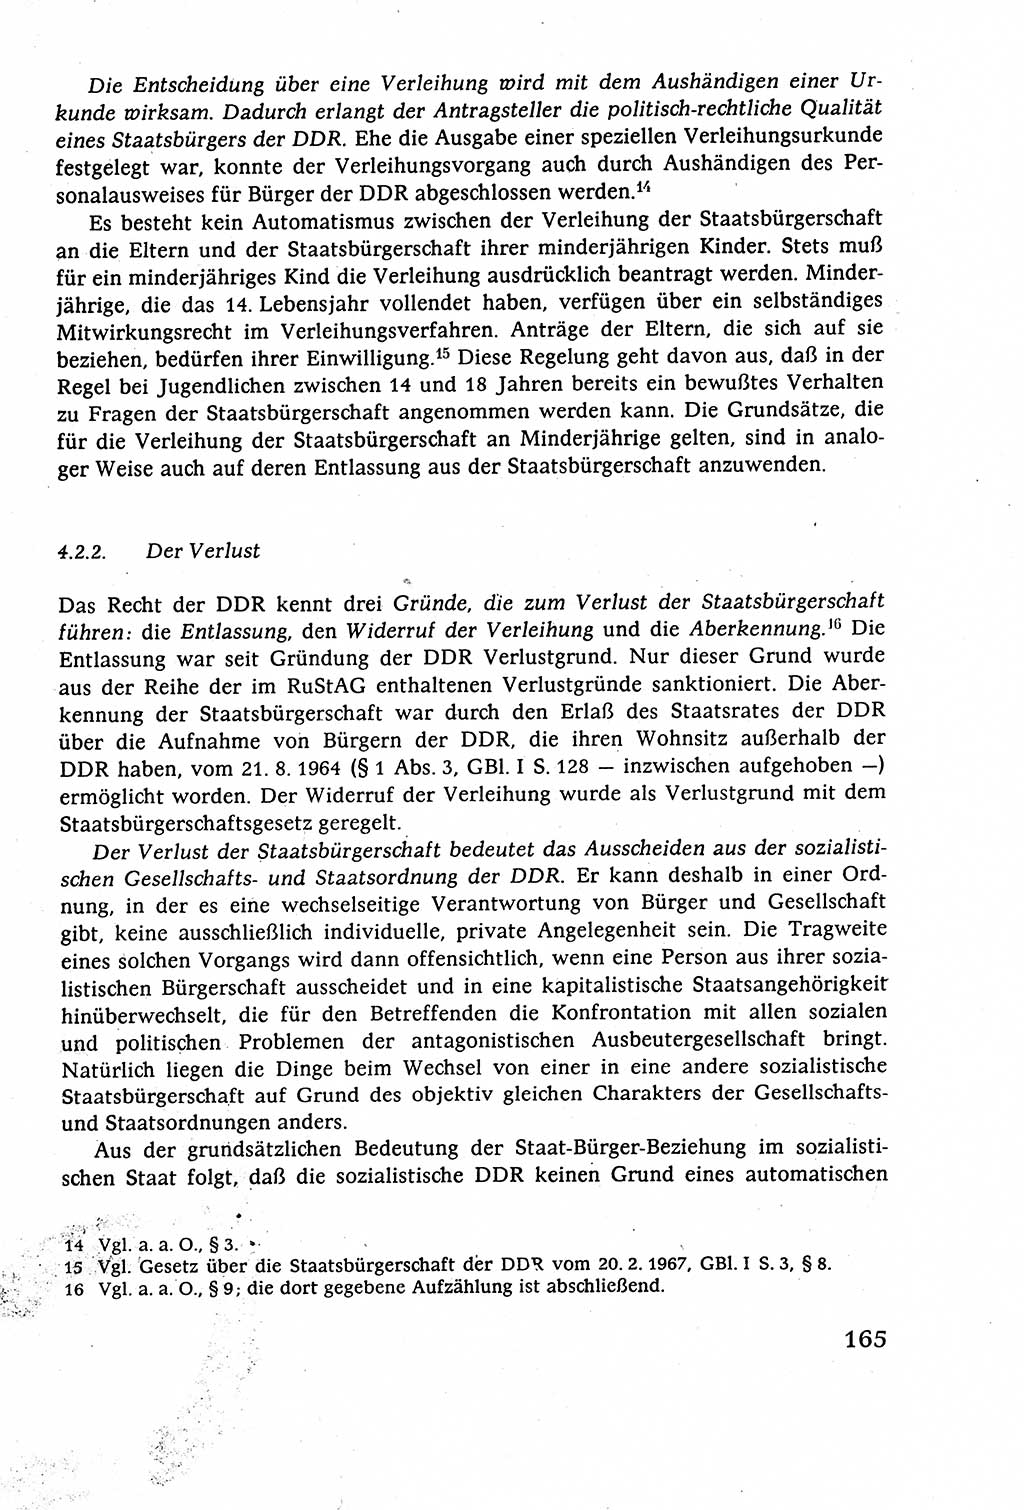 Staatsrecht der DDR (Deutsche Demokratische Republik), Lehrbuch 1977, Seite 165 (St.-R. DDR Lb. 1977, S. 165)